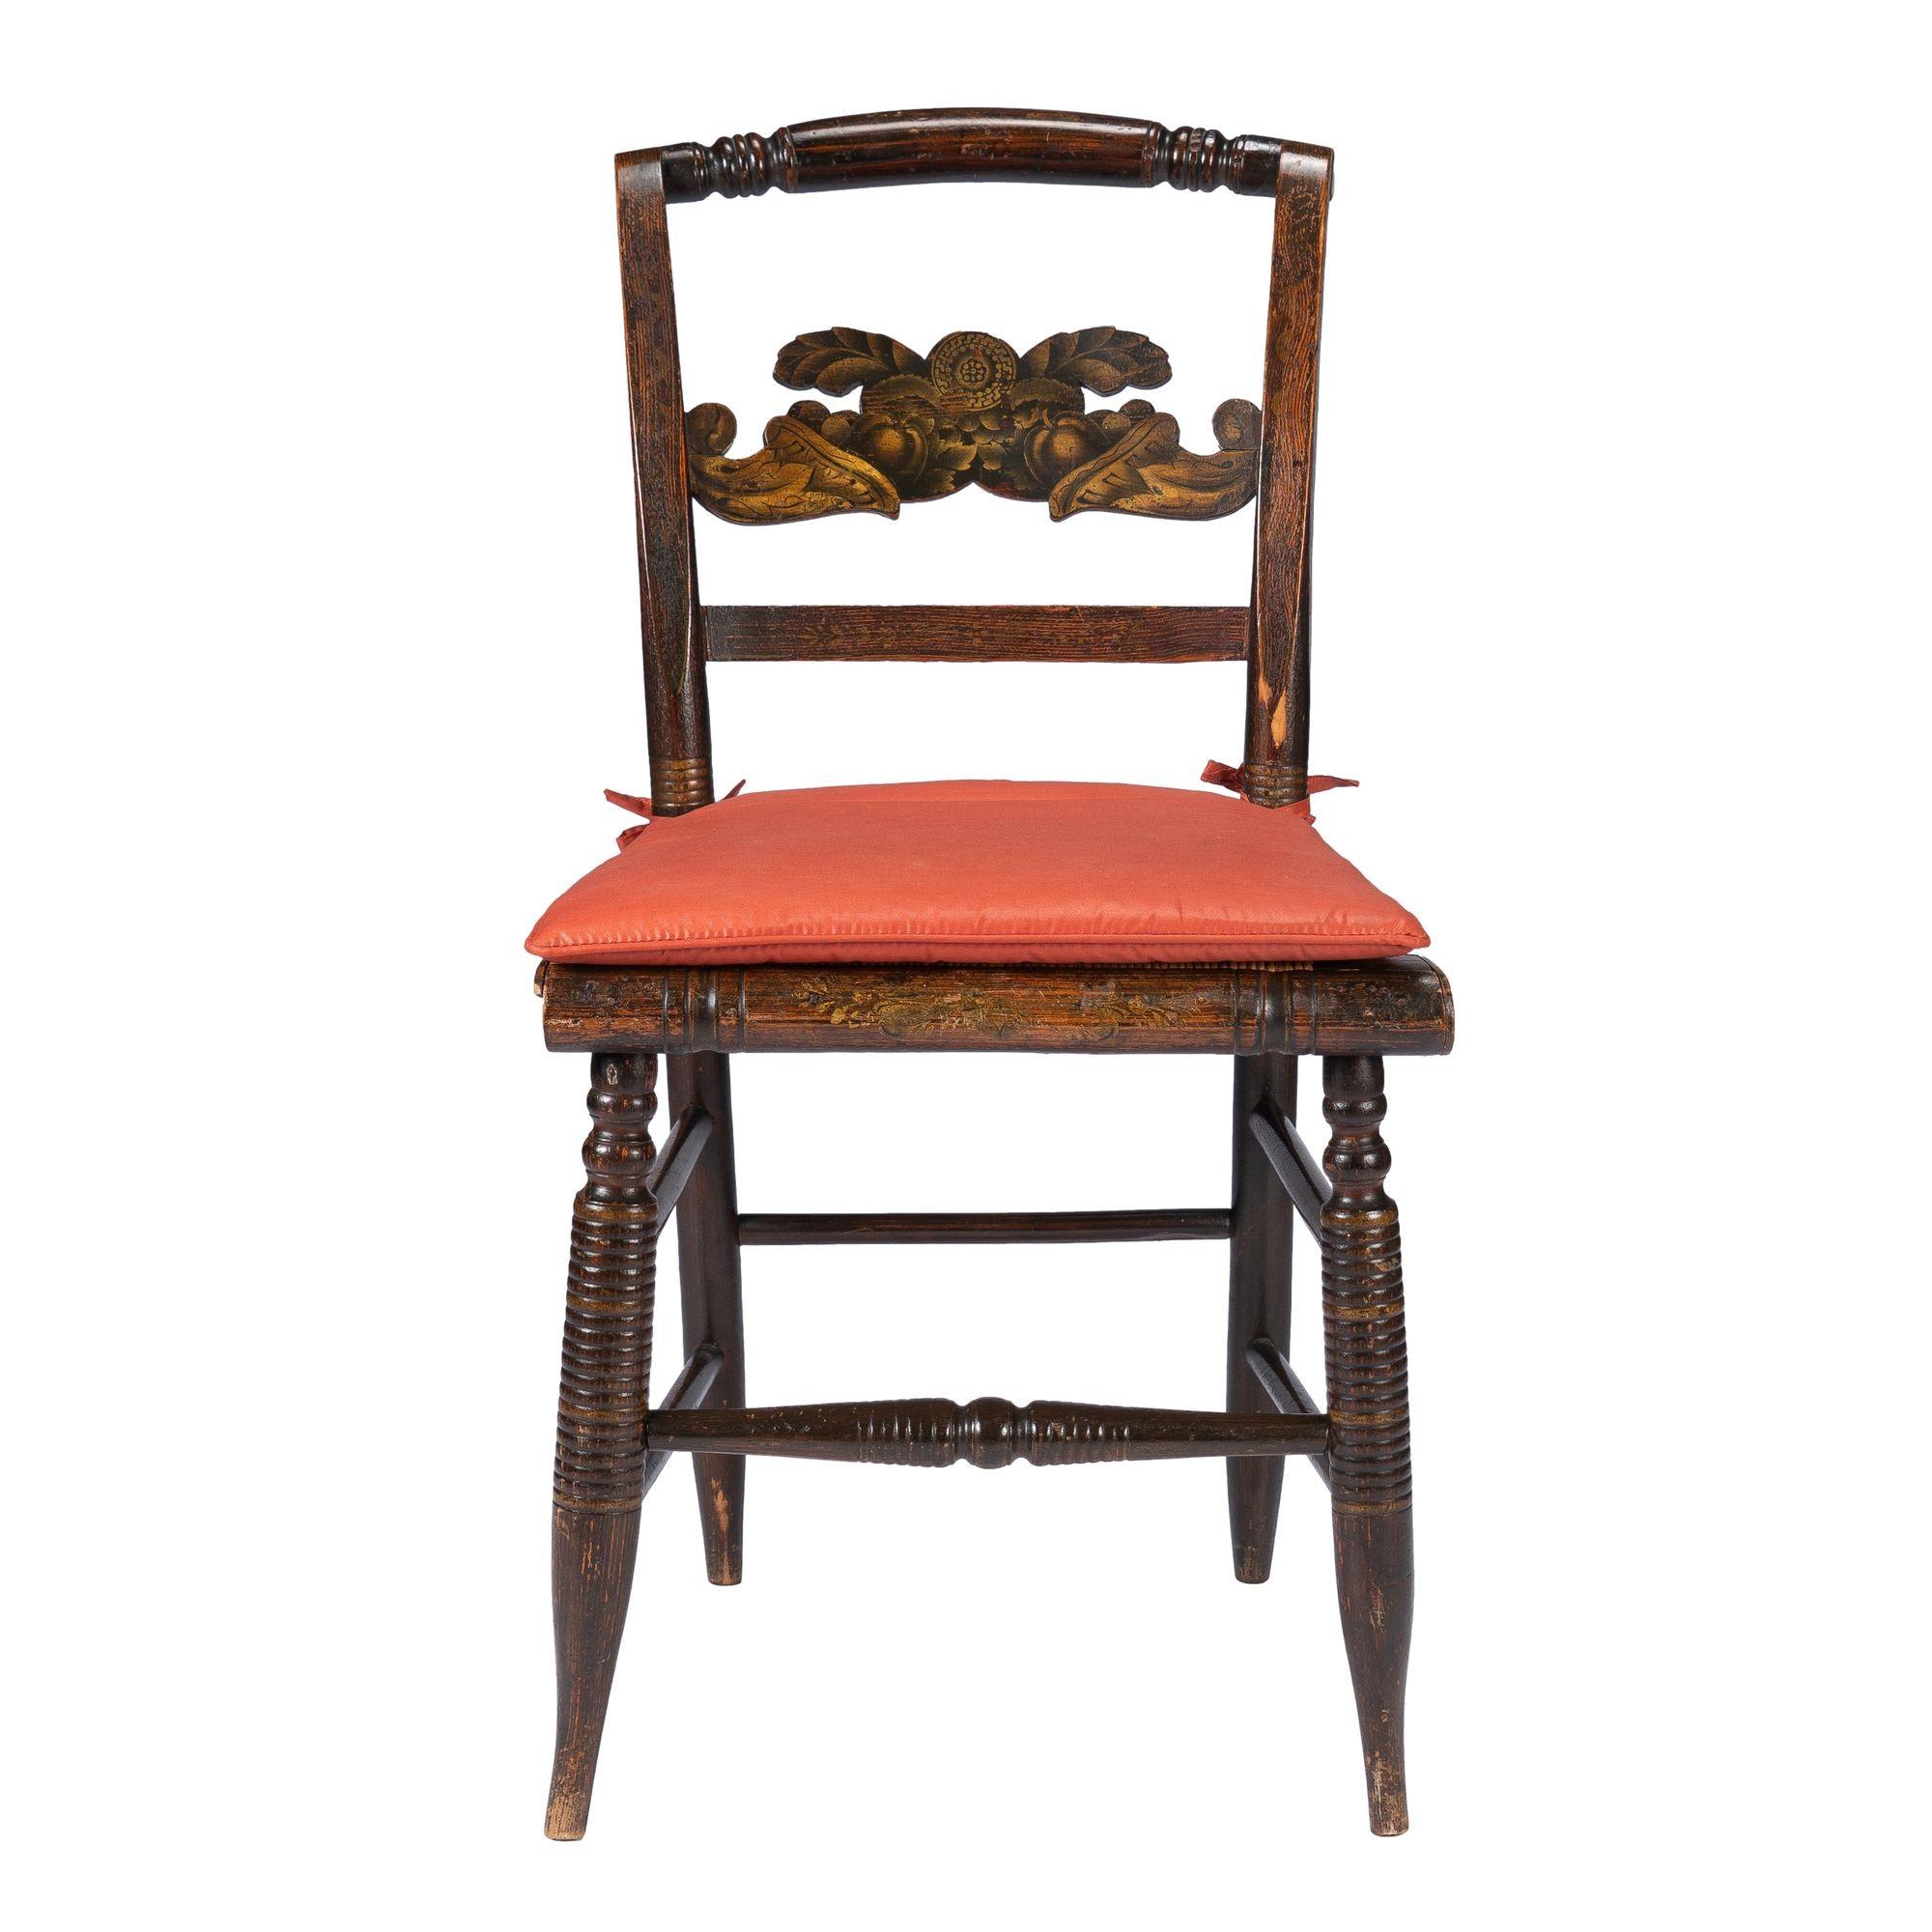 Amerikanischer Hitchcock Beistellstuhl mit Binsensitz und ansteckbarem Sitzkissen. Der Stuhl weist die originale vergoldete und bronzene Pulverschablonendekoration auf der doppelten Füllhorn-Rückenlehne sowie ein verblichenes Blumenmotiv auf der